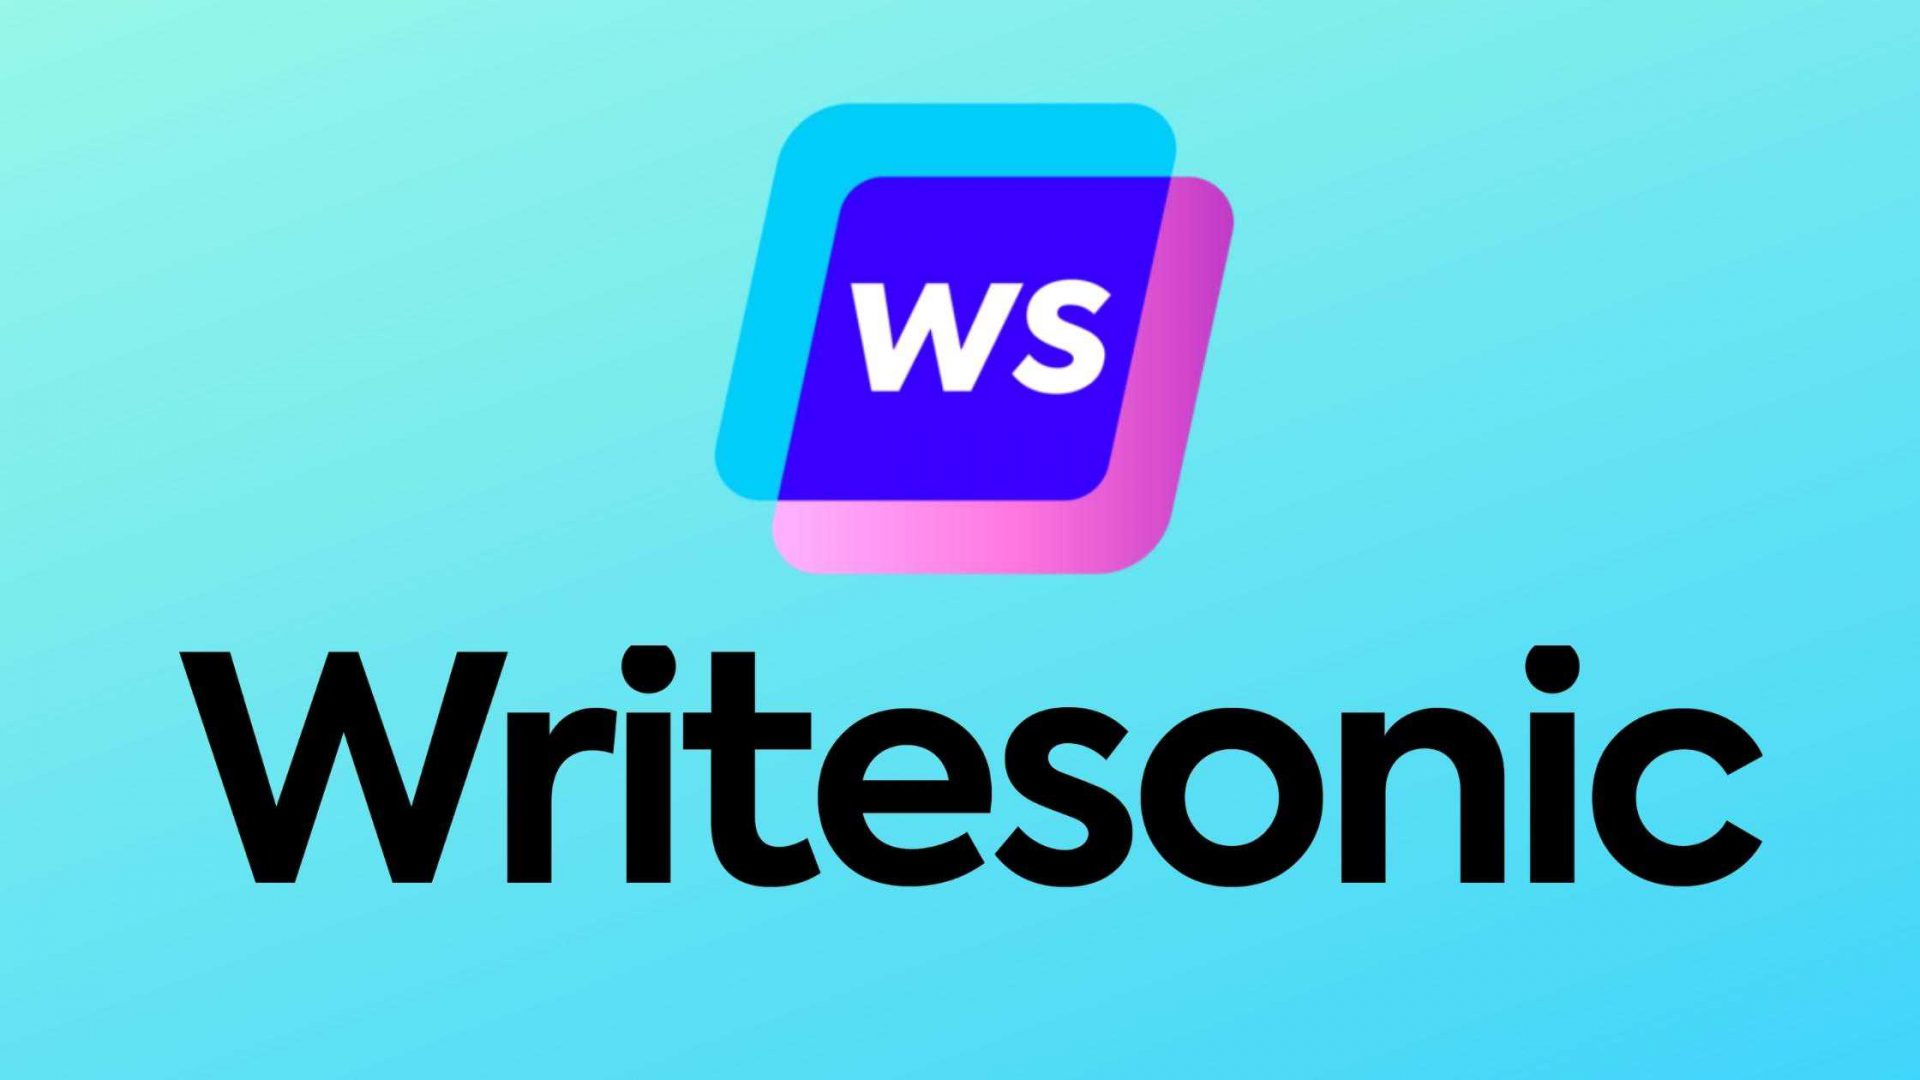 Writesonic-image